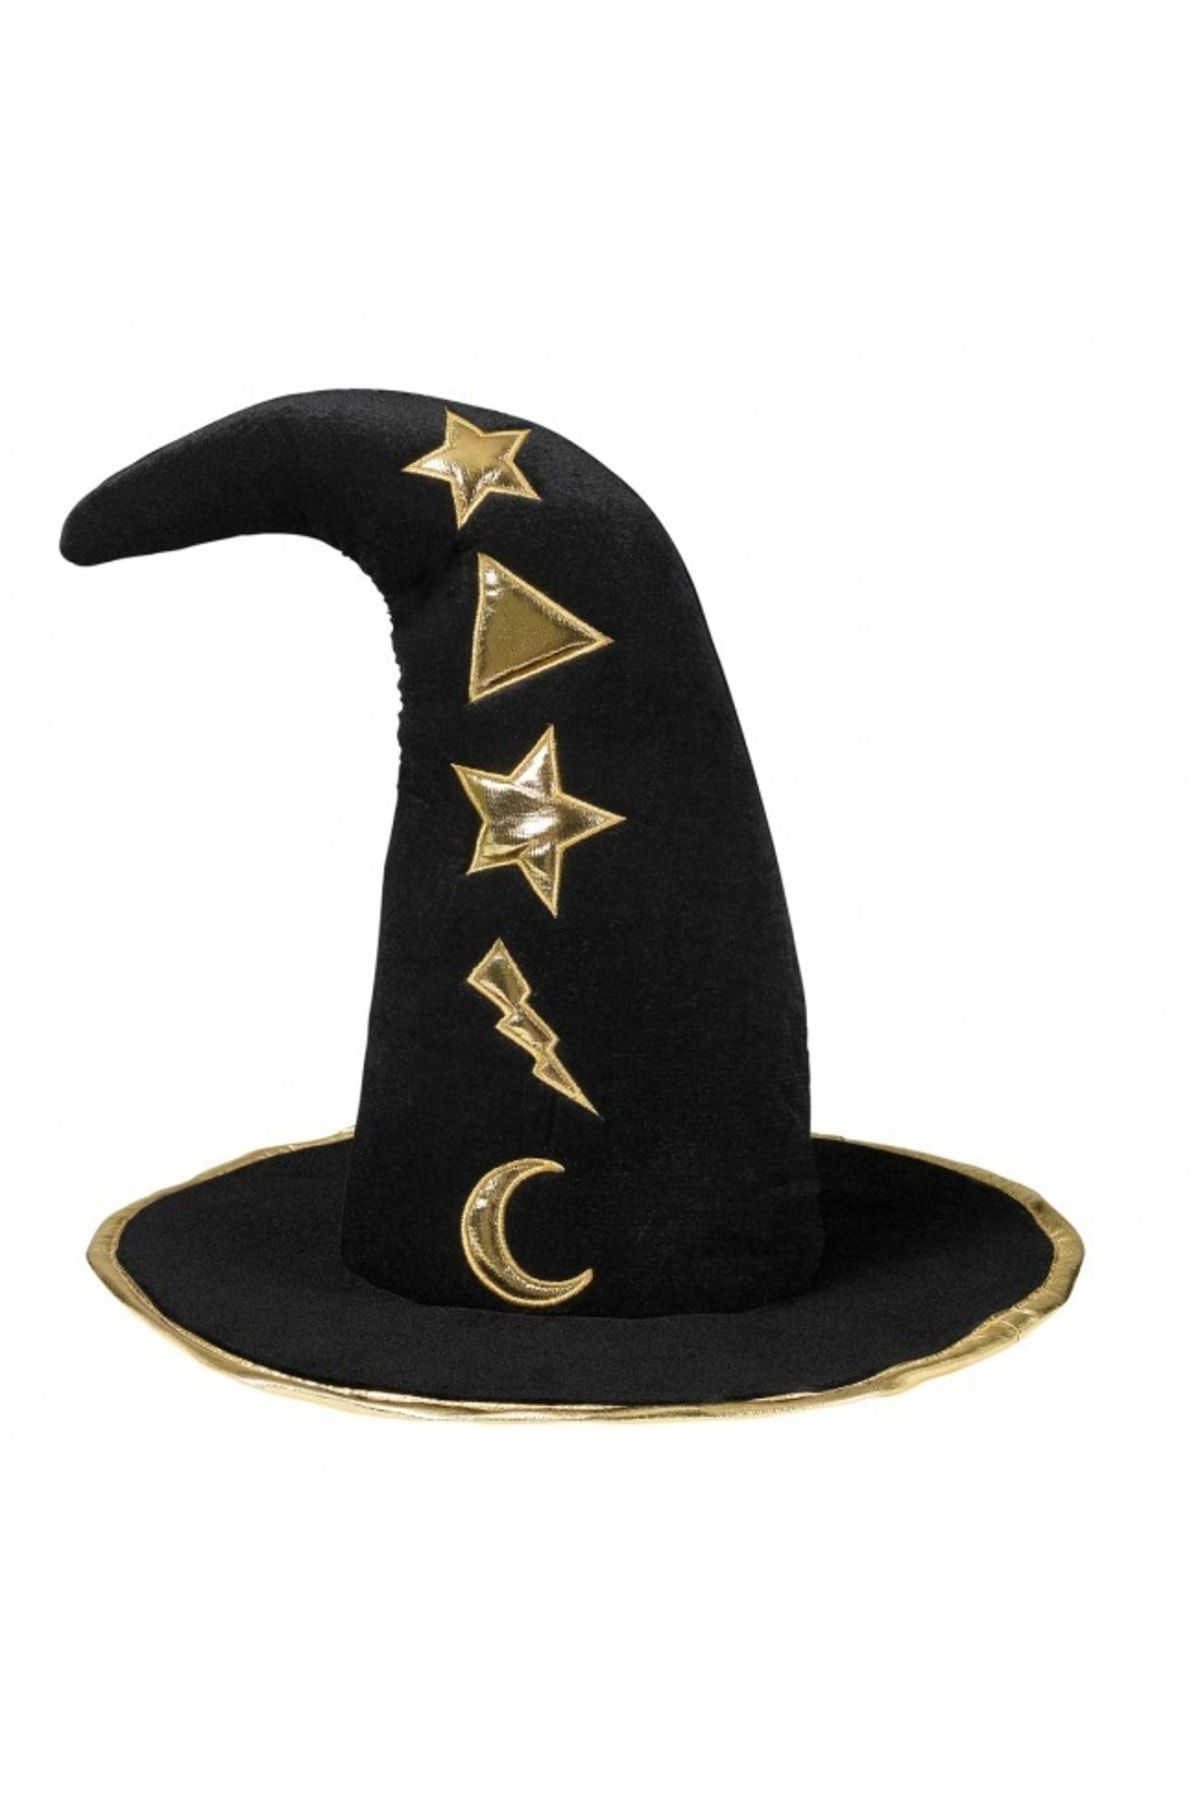 YTSHOP Kadife Cadı Şapka Ay Ve Yıldız Altın Renk Desenli.